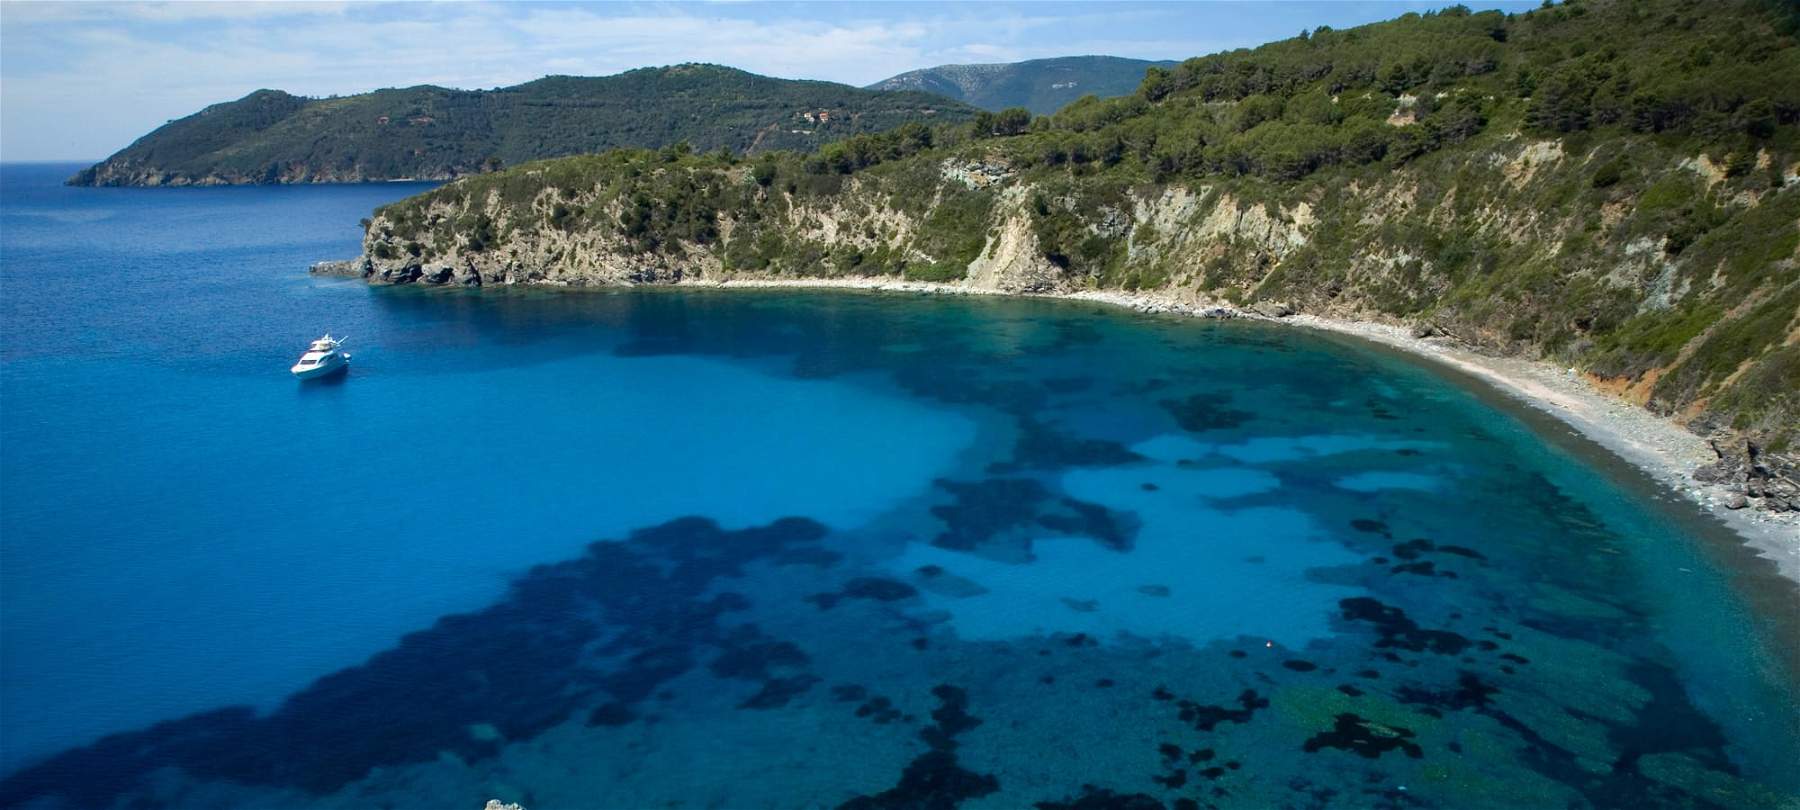 Isla de Elba, qué ver: los 10 lugares que no debe perderse